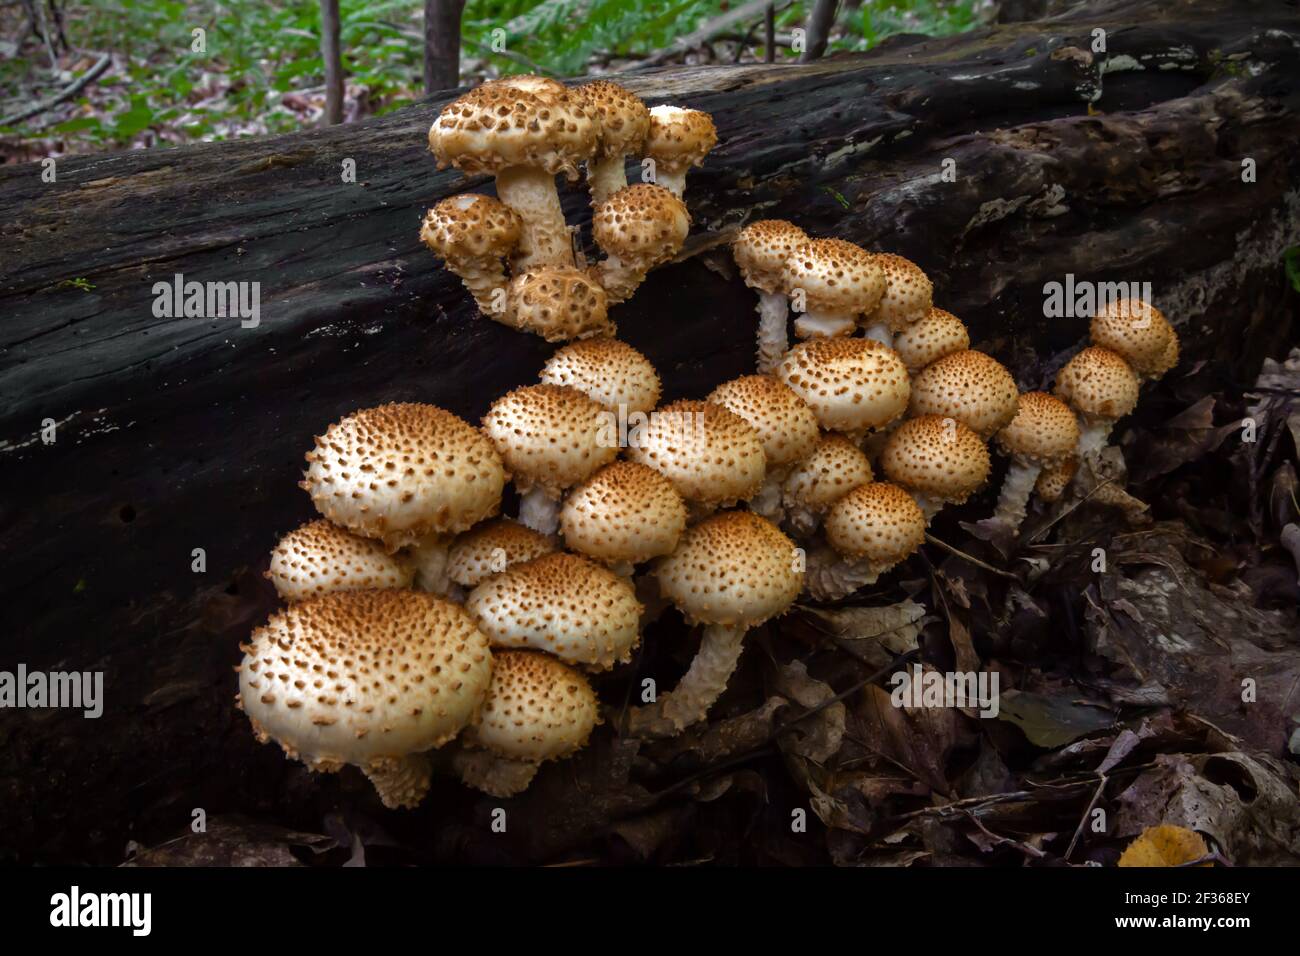 Pholiota Scaly un fungo saprotrofico comune che si nutre di legno indebolito o morto. Si è riferito che è velenoso per il consumo umano. Foto Stock